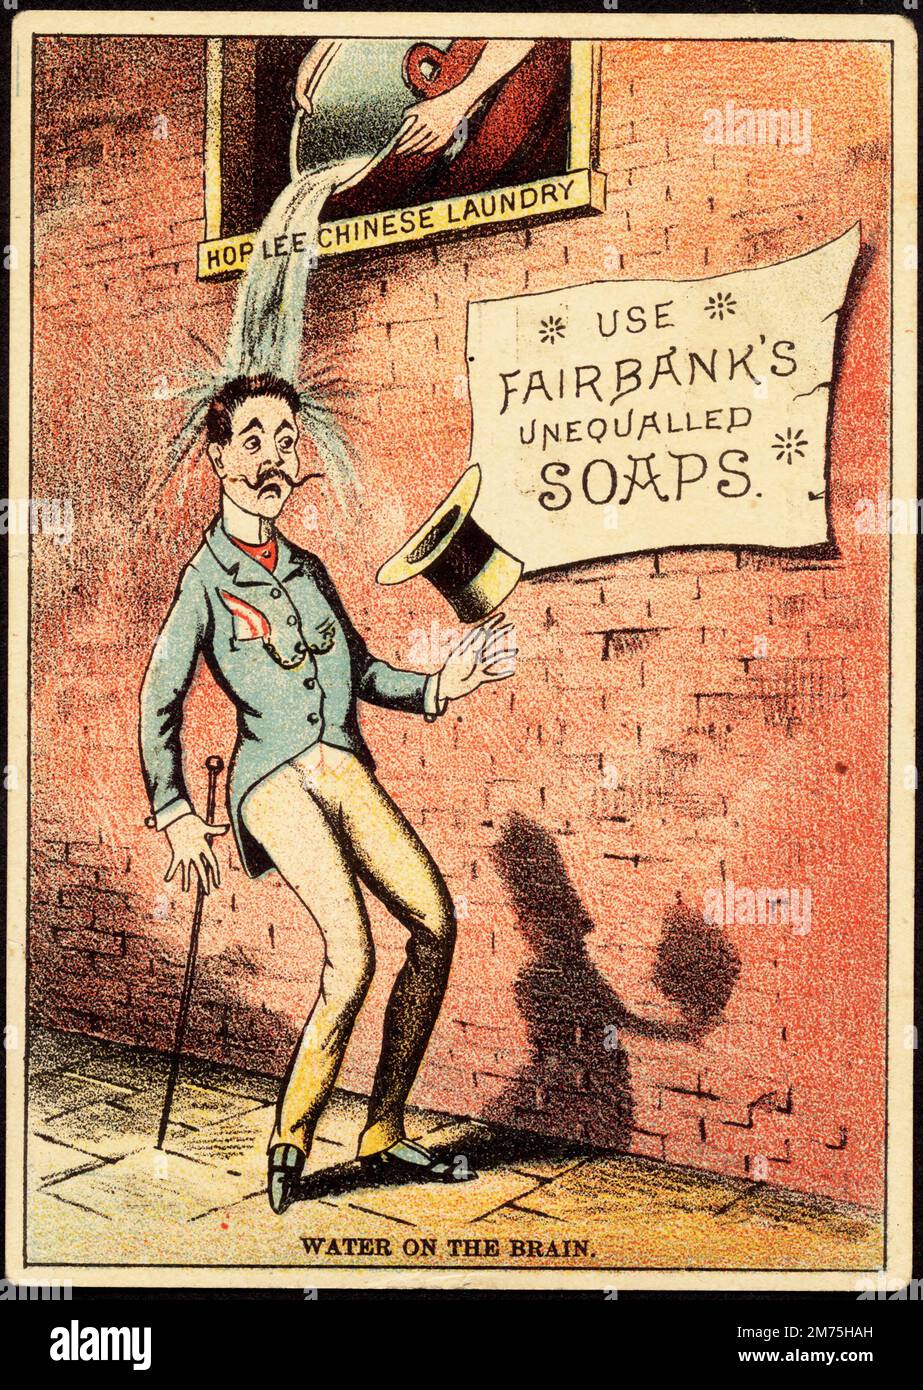 Politisch inkorrekte Werbung (nach den heutigen Standards) für Fairbank's Unequalled Soaps, mit einem Mann, der mit Wasser aus einer chinesischen Wäsche gespritzt wurde, um 1900 Stockfoto